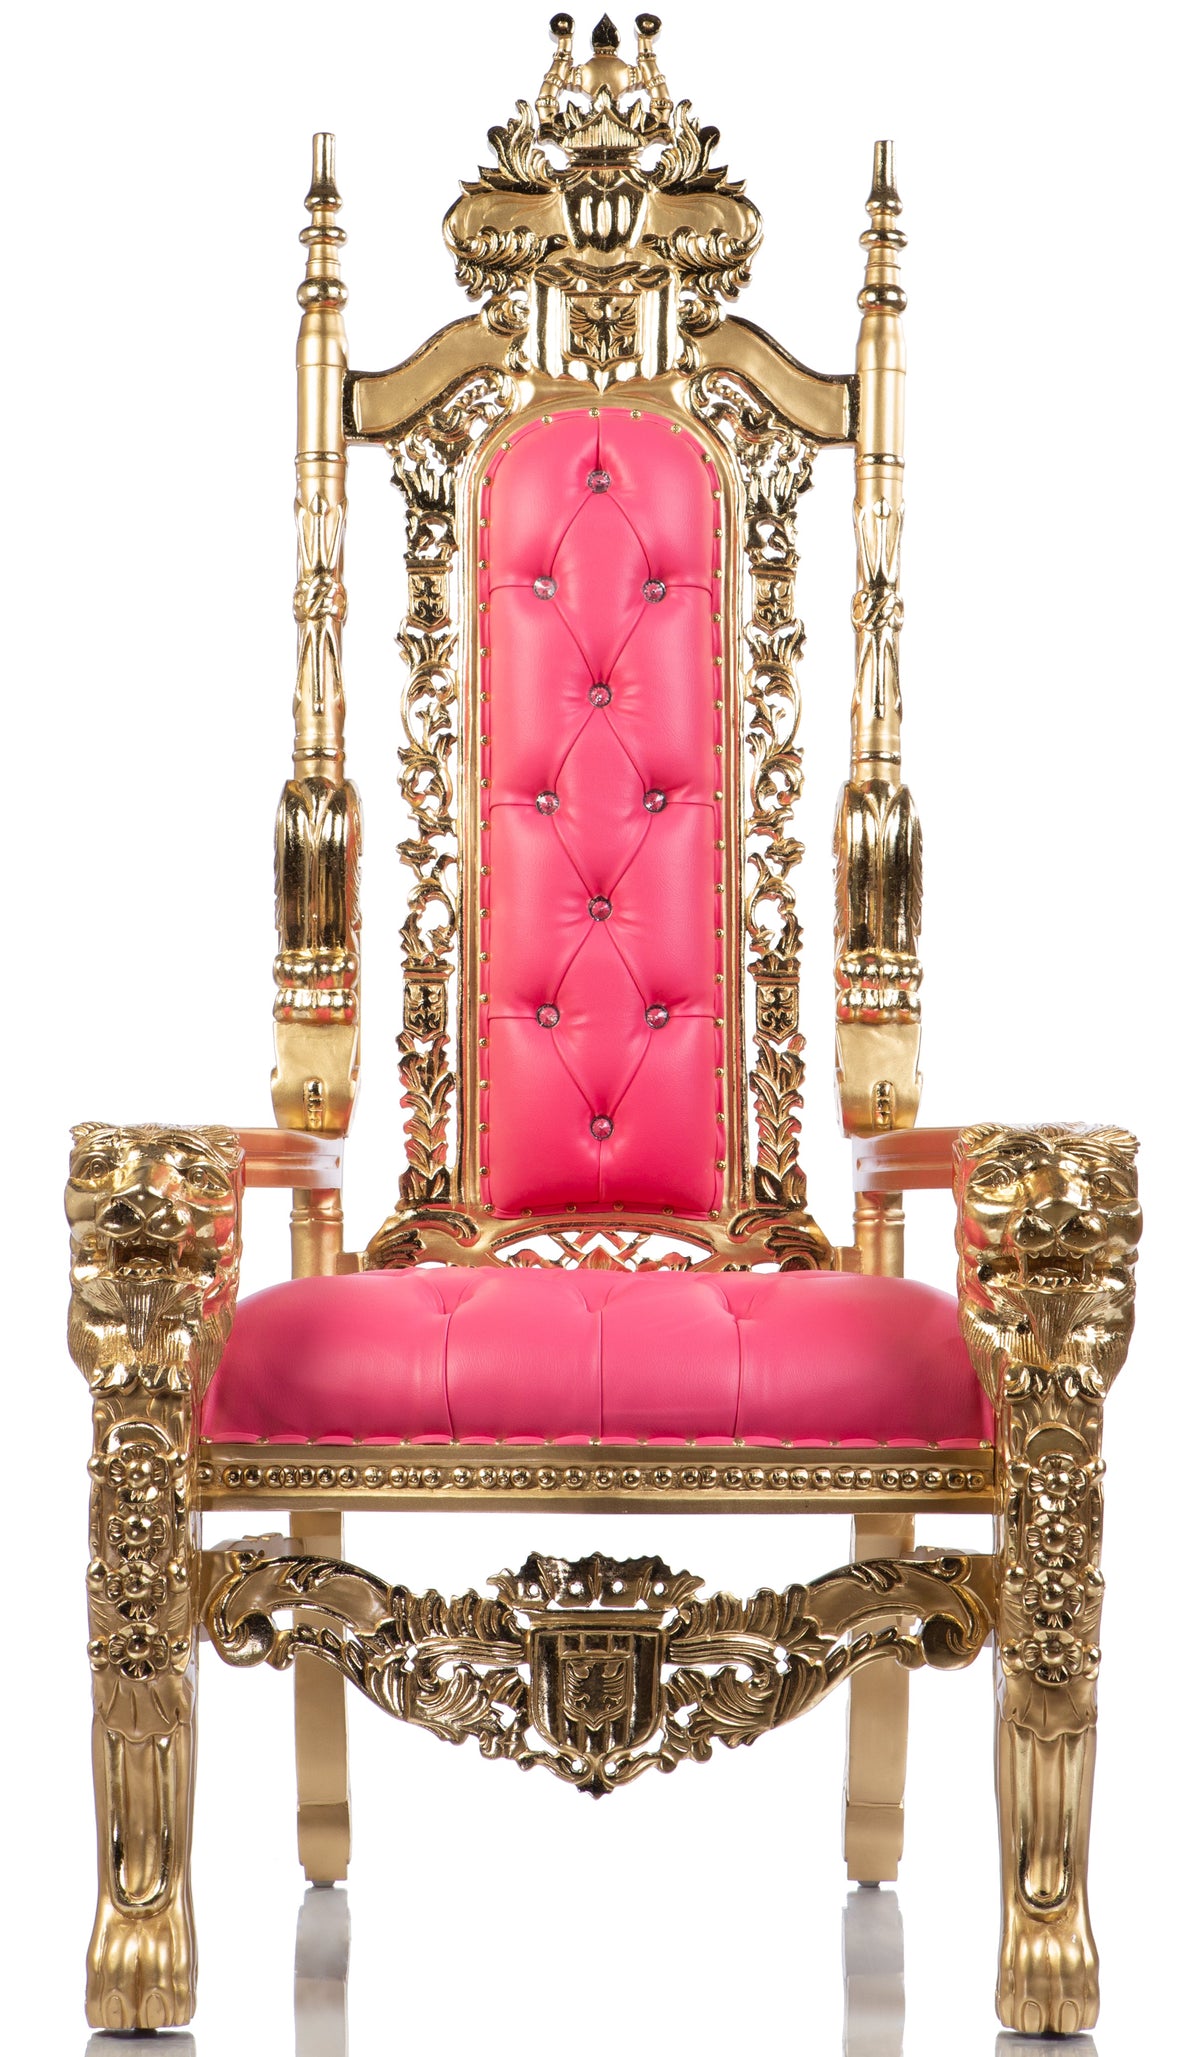 El trono de cabeza de león de caramelo (cuero rosa/dorado)